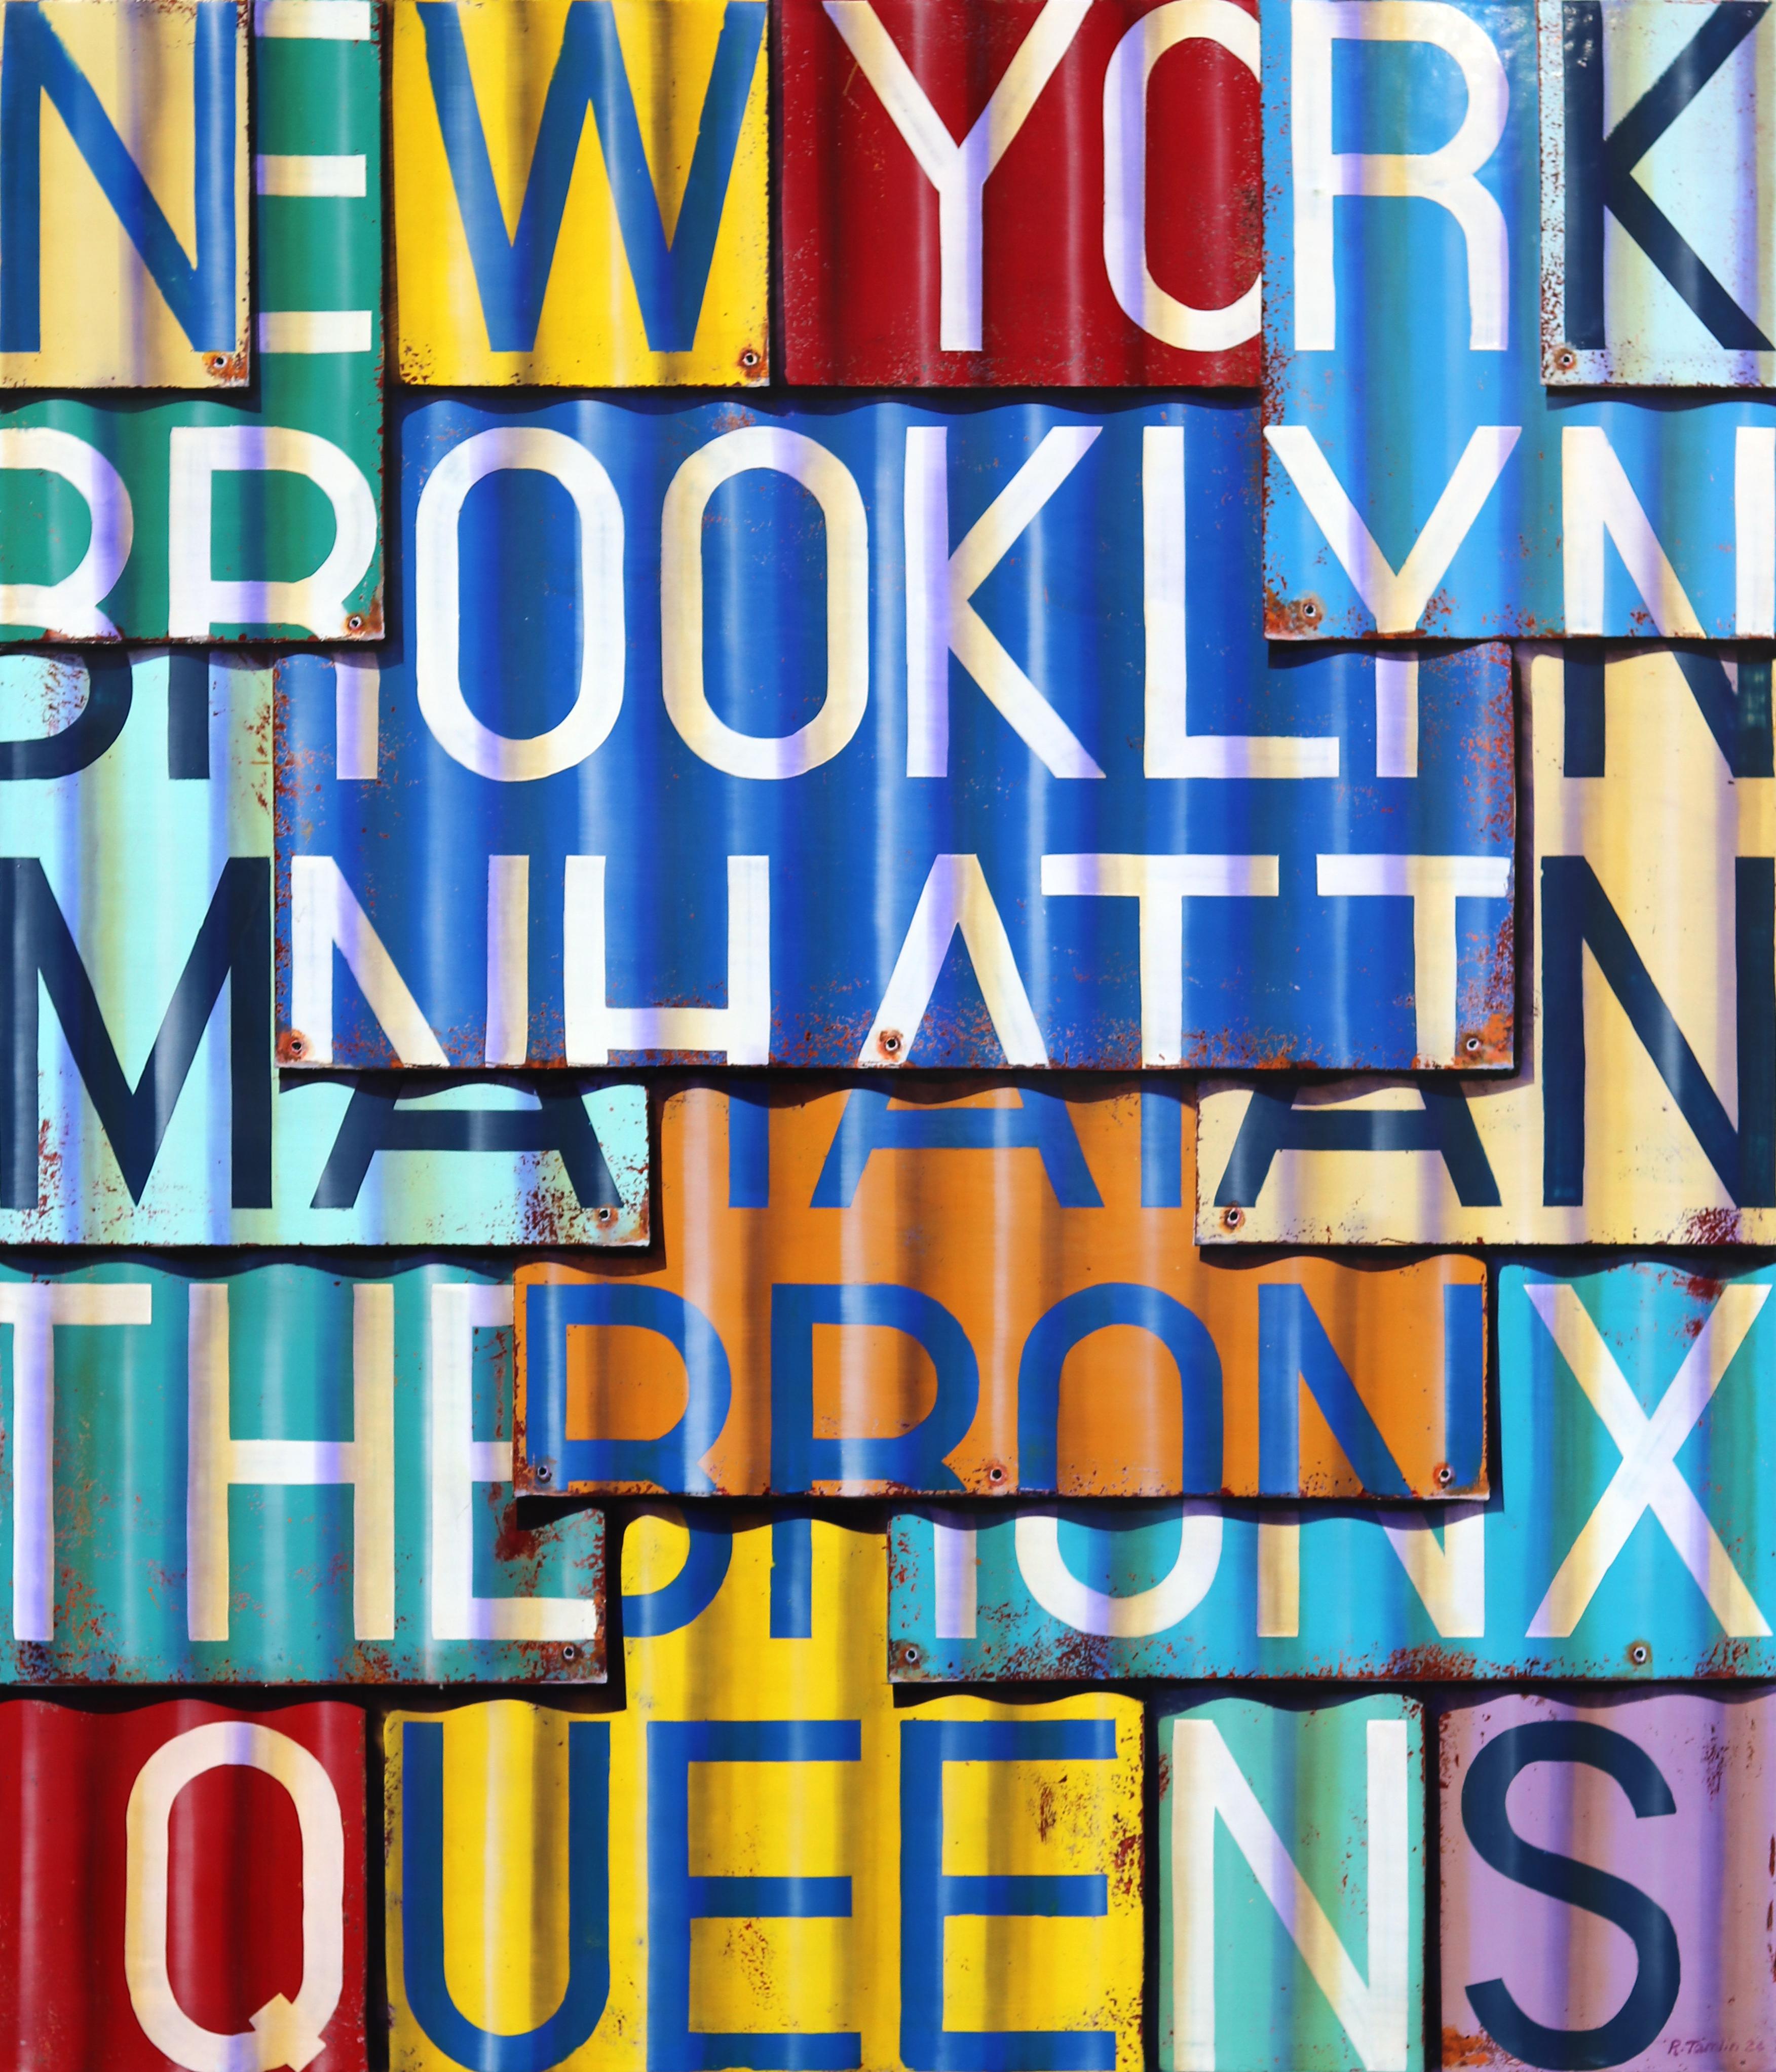 New York City – Fotorealistisches Gemälde in Öl und Emaille auf Leinwand